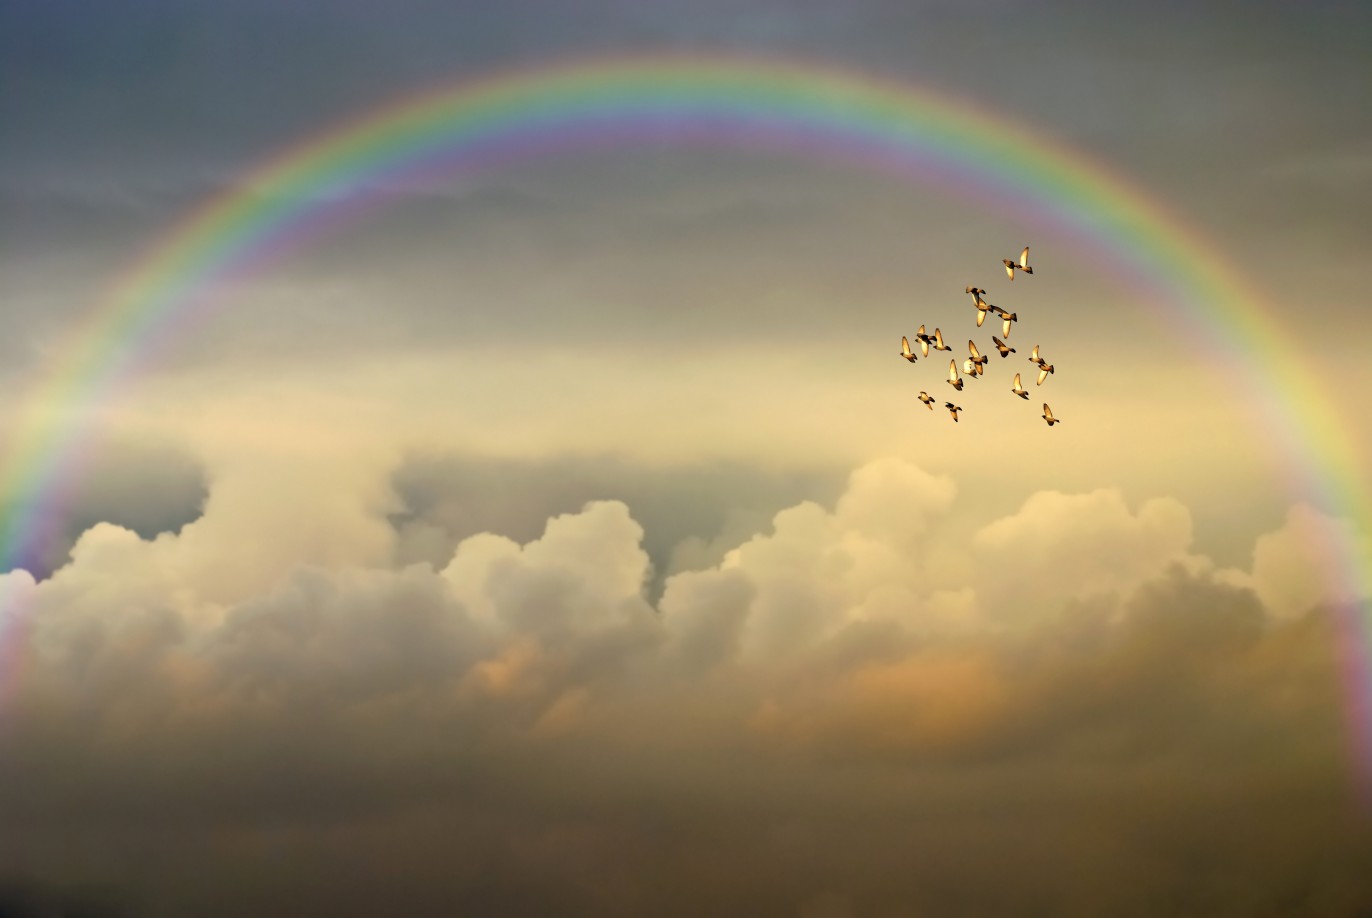 雲の中に現れた希望の虹と羽ばたく鳥